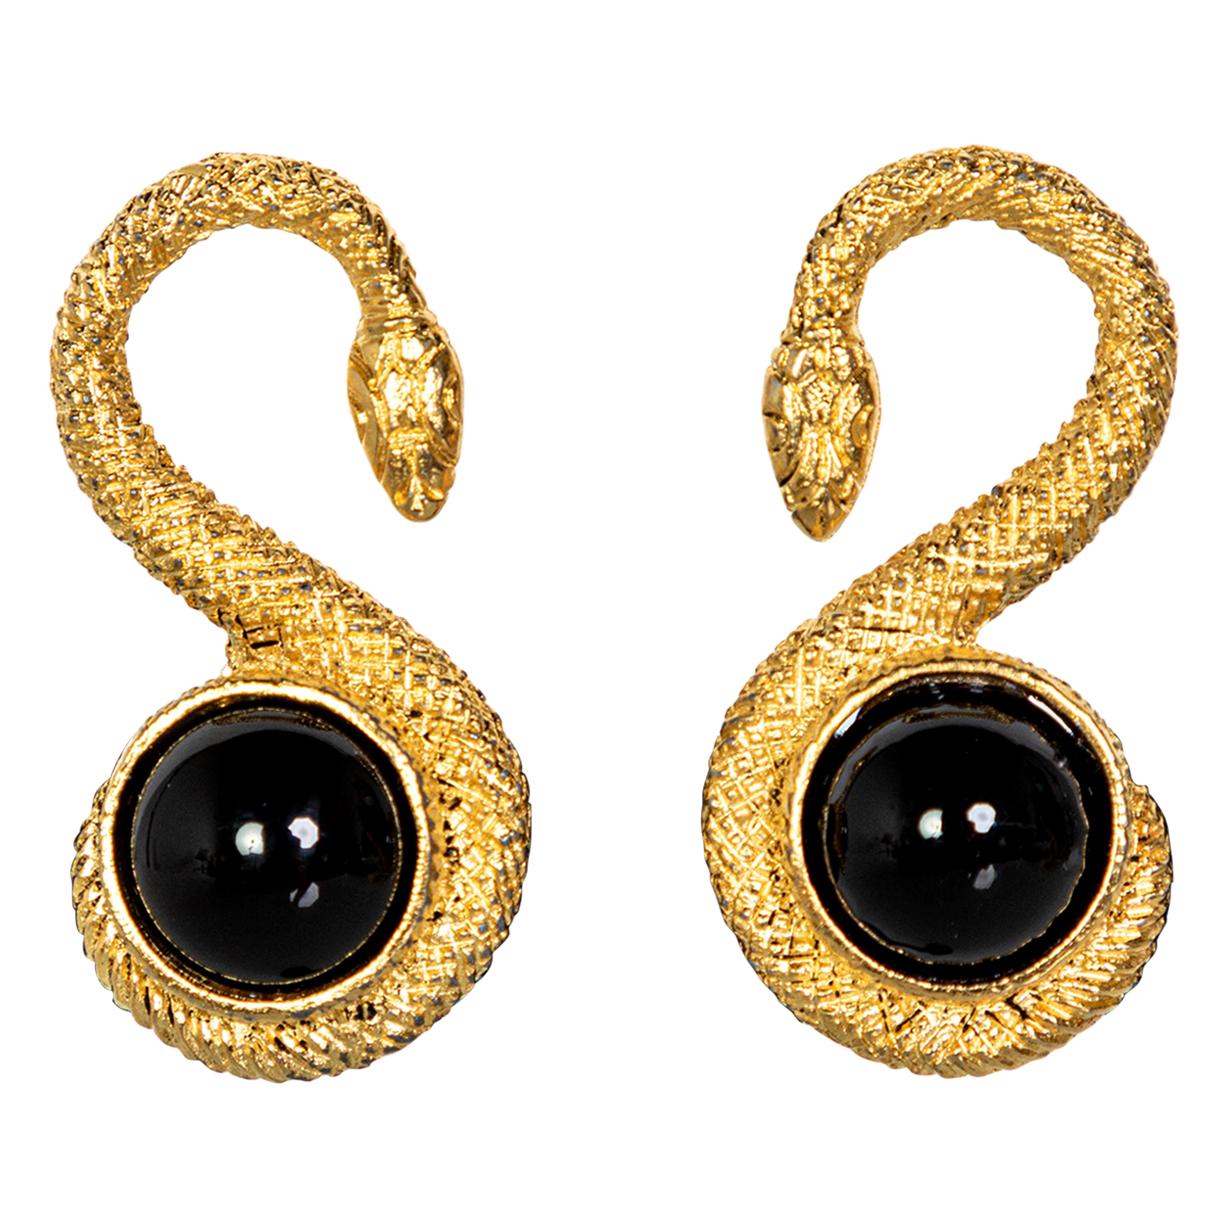 Ysl Earrings - 219 For Sale on 1stDibs | ysl monogram earrings 